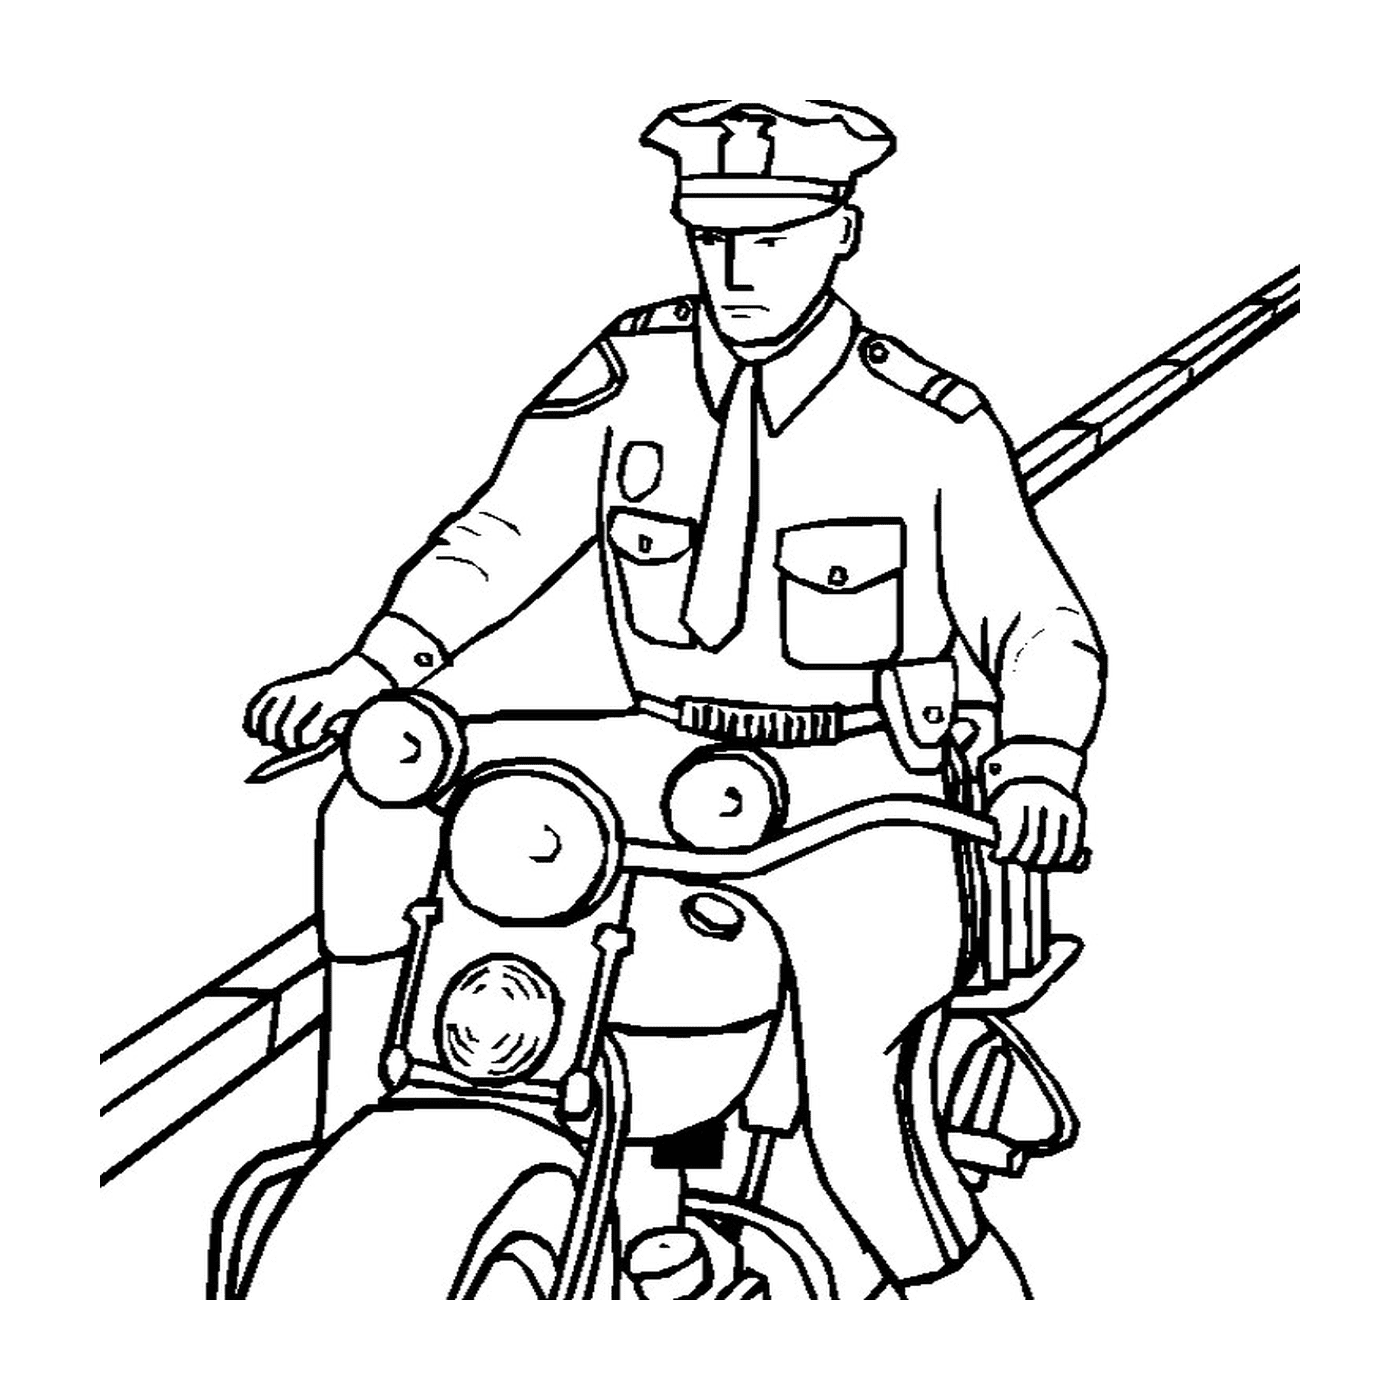  Polizist fahren Motorrad 